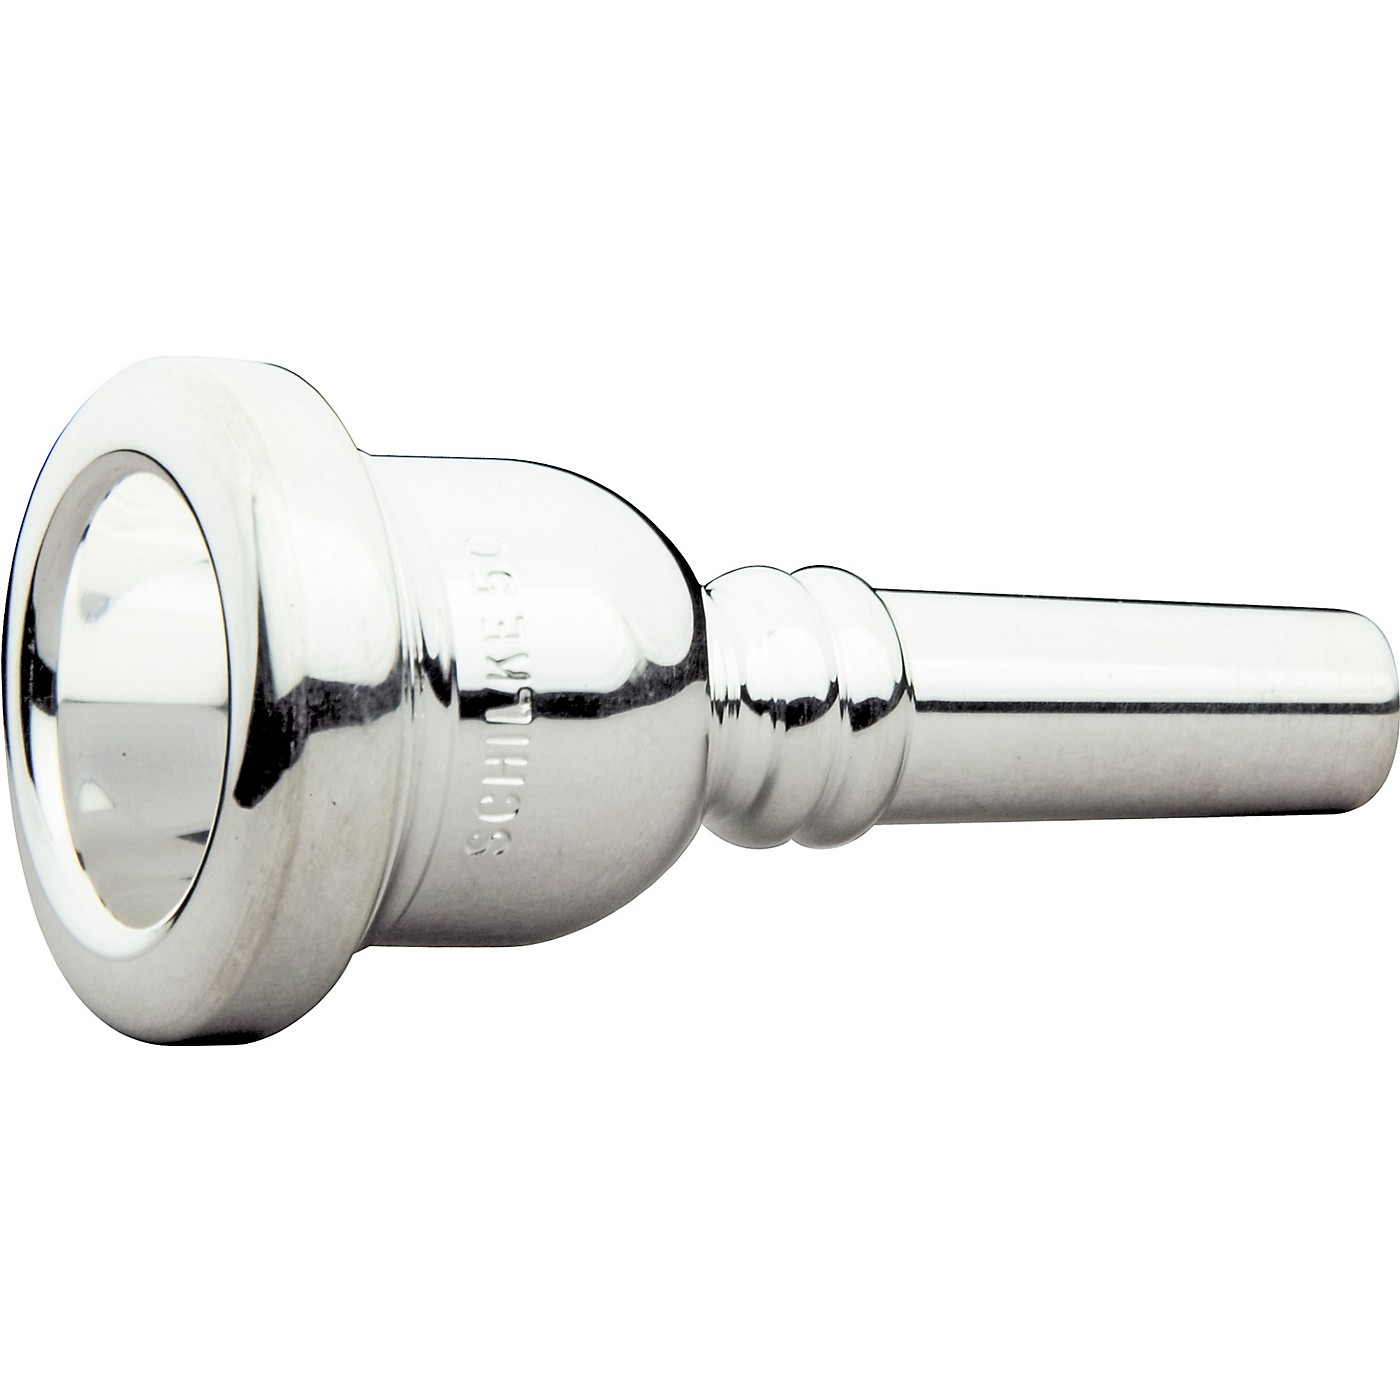 Schilke Standard Large Shank Trombone Mouthpiece in Silver 50